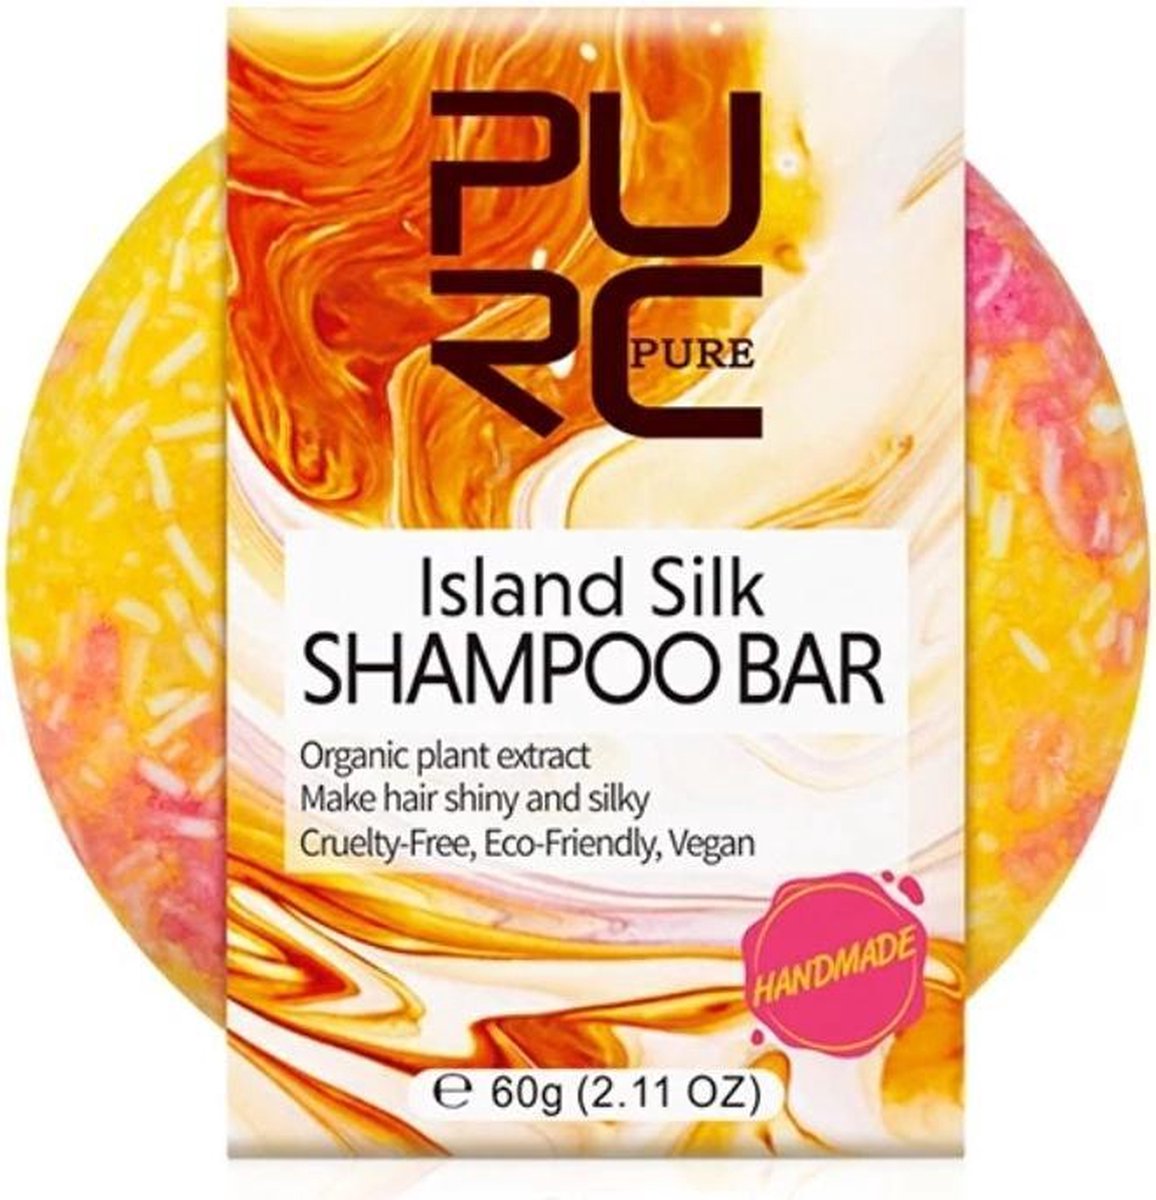 Handmade shampoo bar - Island silk